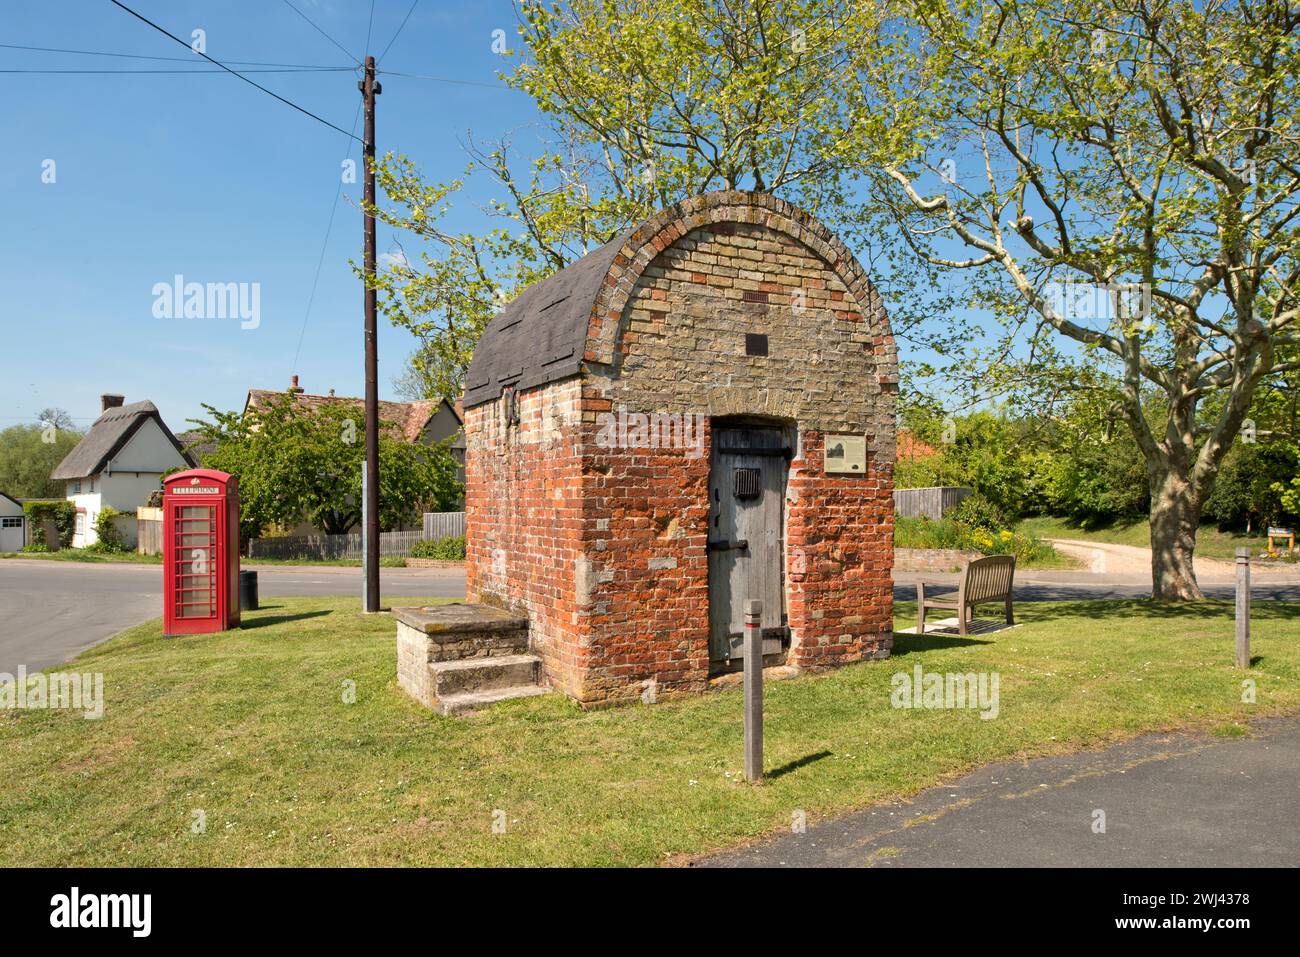 Les cachots du village. Litlington, Cambridgeshire, construit au début du XVIIIe siècle, connu sous le nom de 'The cage', 'St.Peter's Hole' et 'Litlington cage'. Banque D'Images